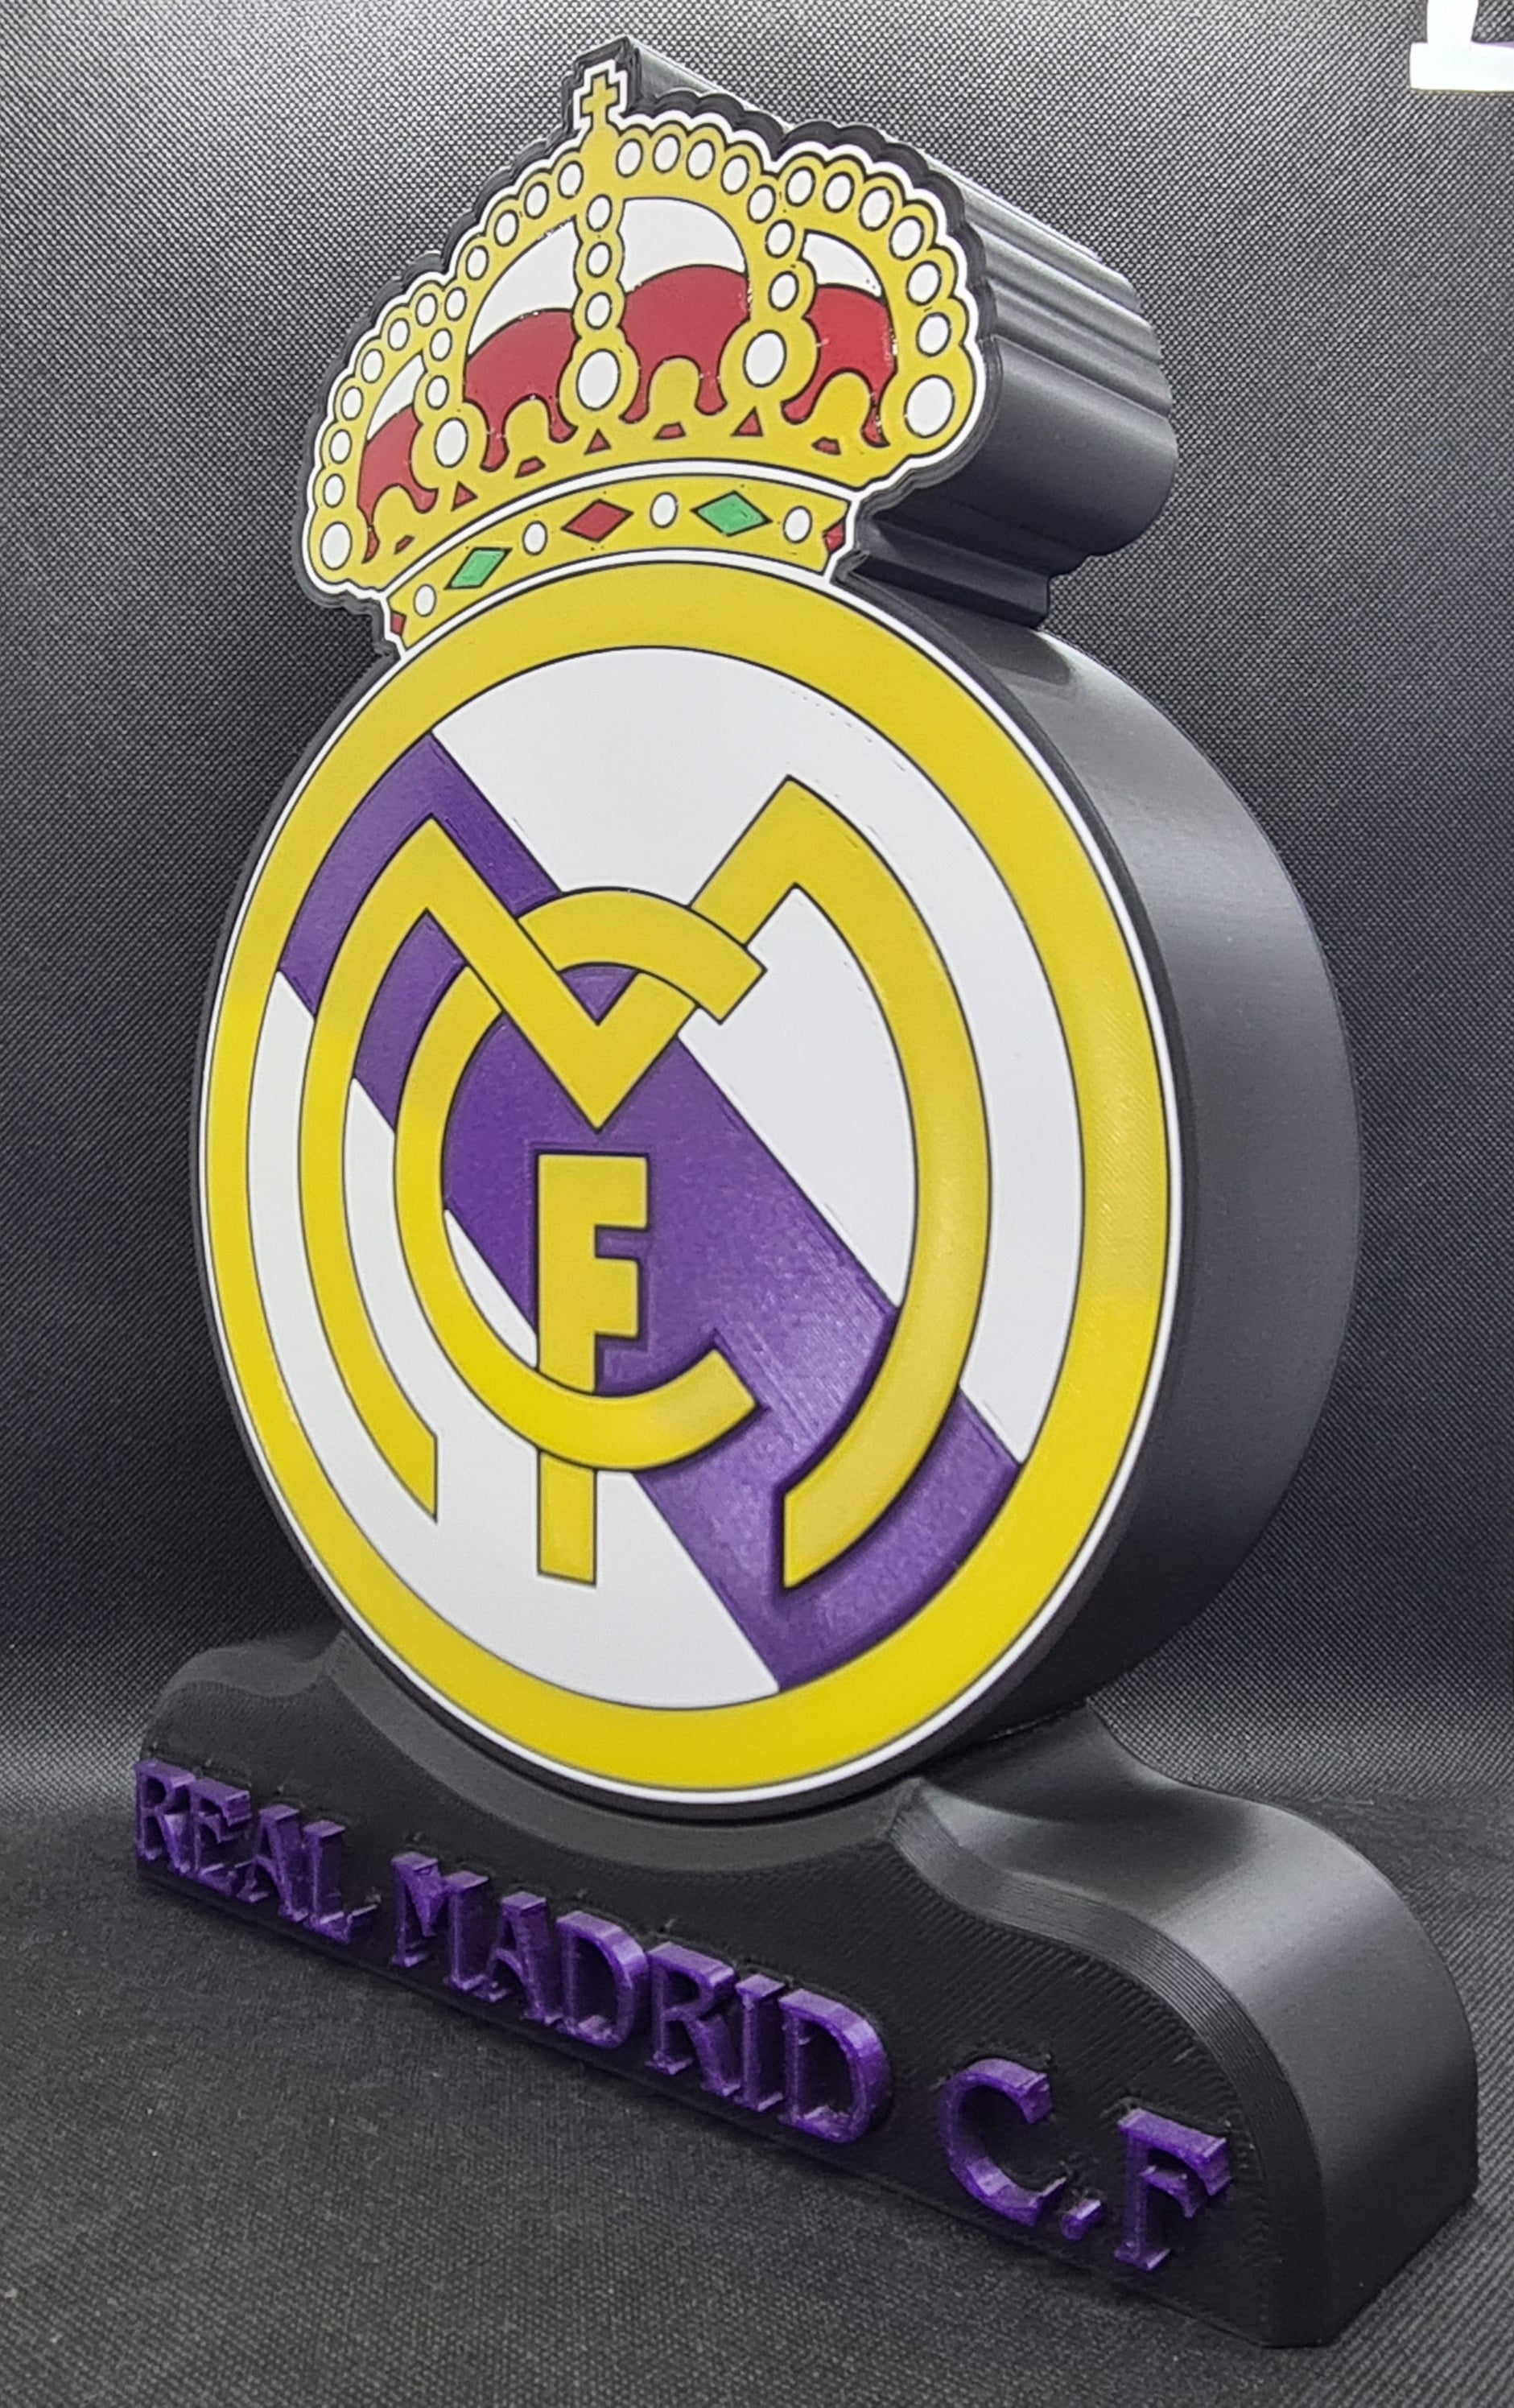 Lámpara led inspirada en el equipo de fútbol (REAL MADRID)